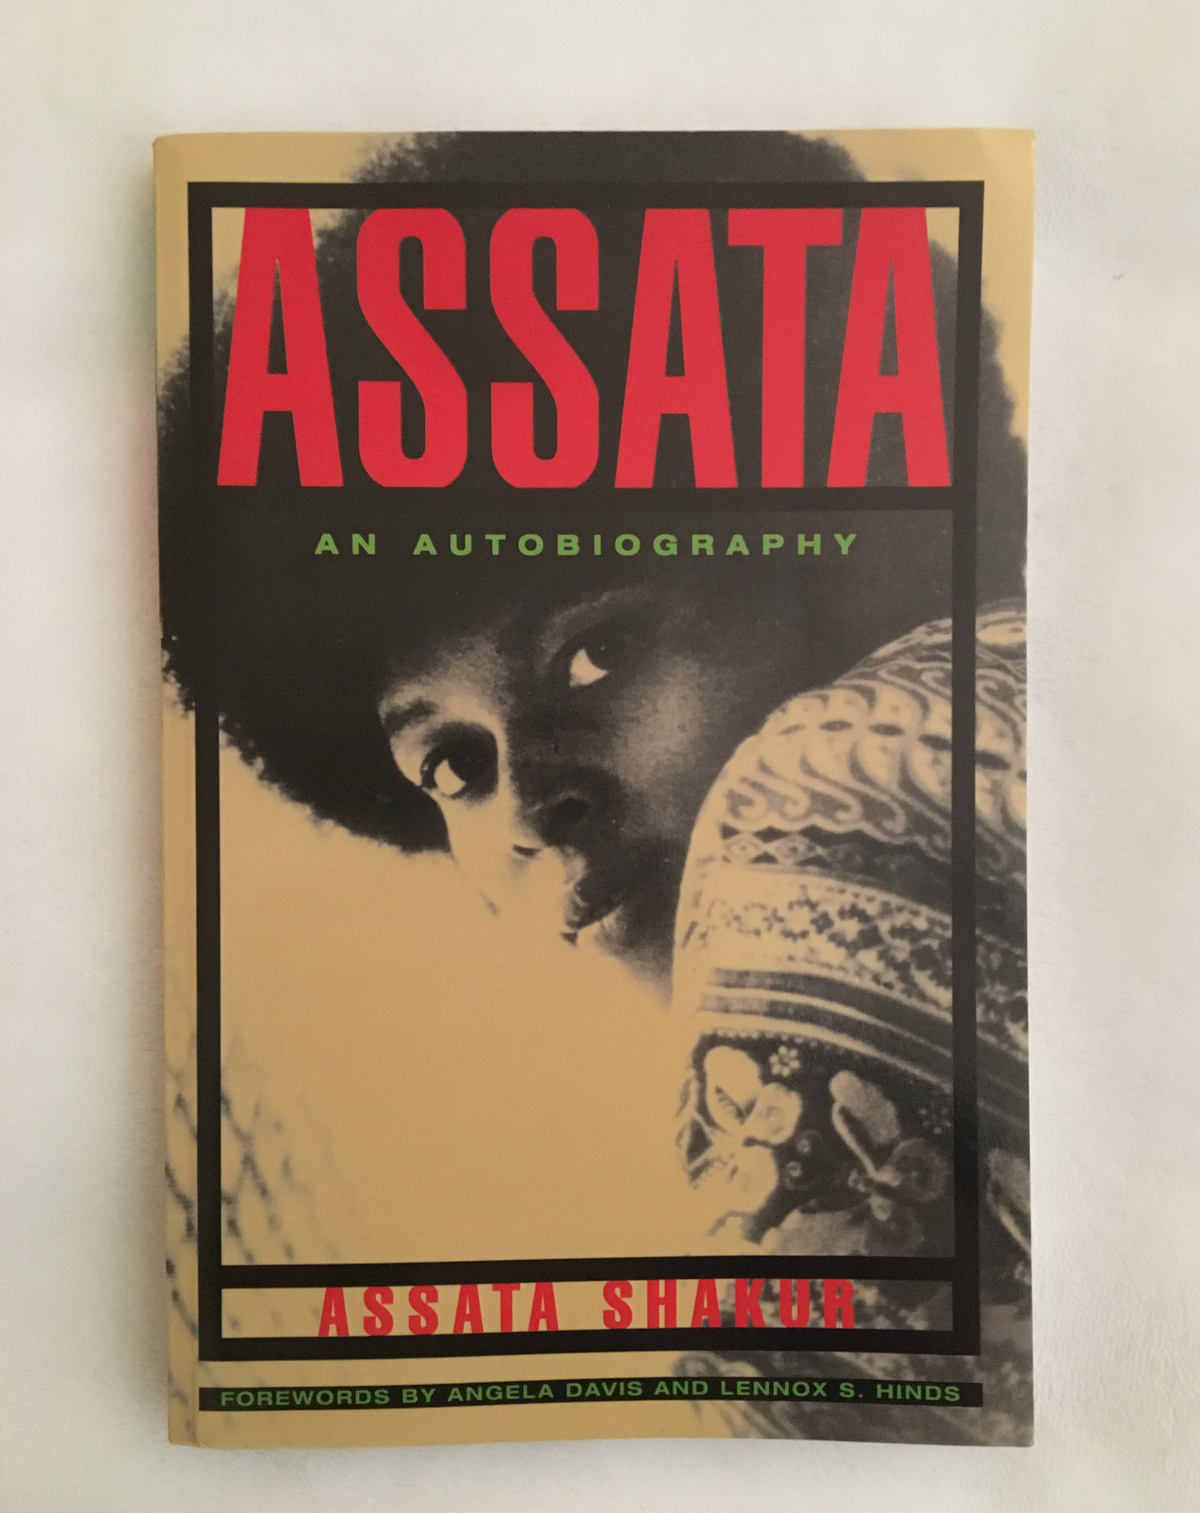 Assata by Assata Shakur, book, Ten Dollar Books, Ten Dollar Books